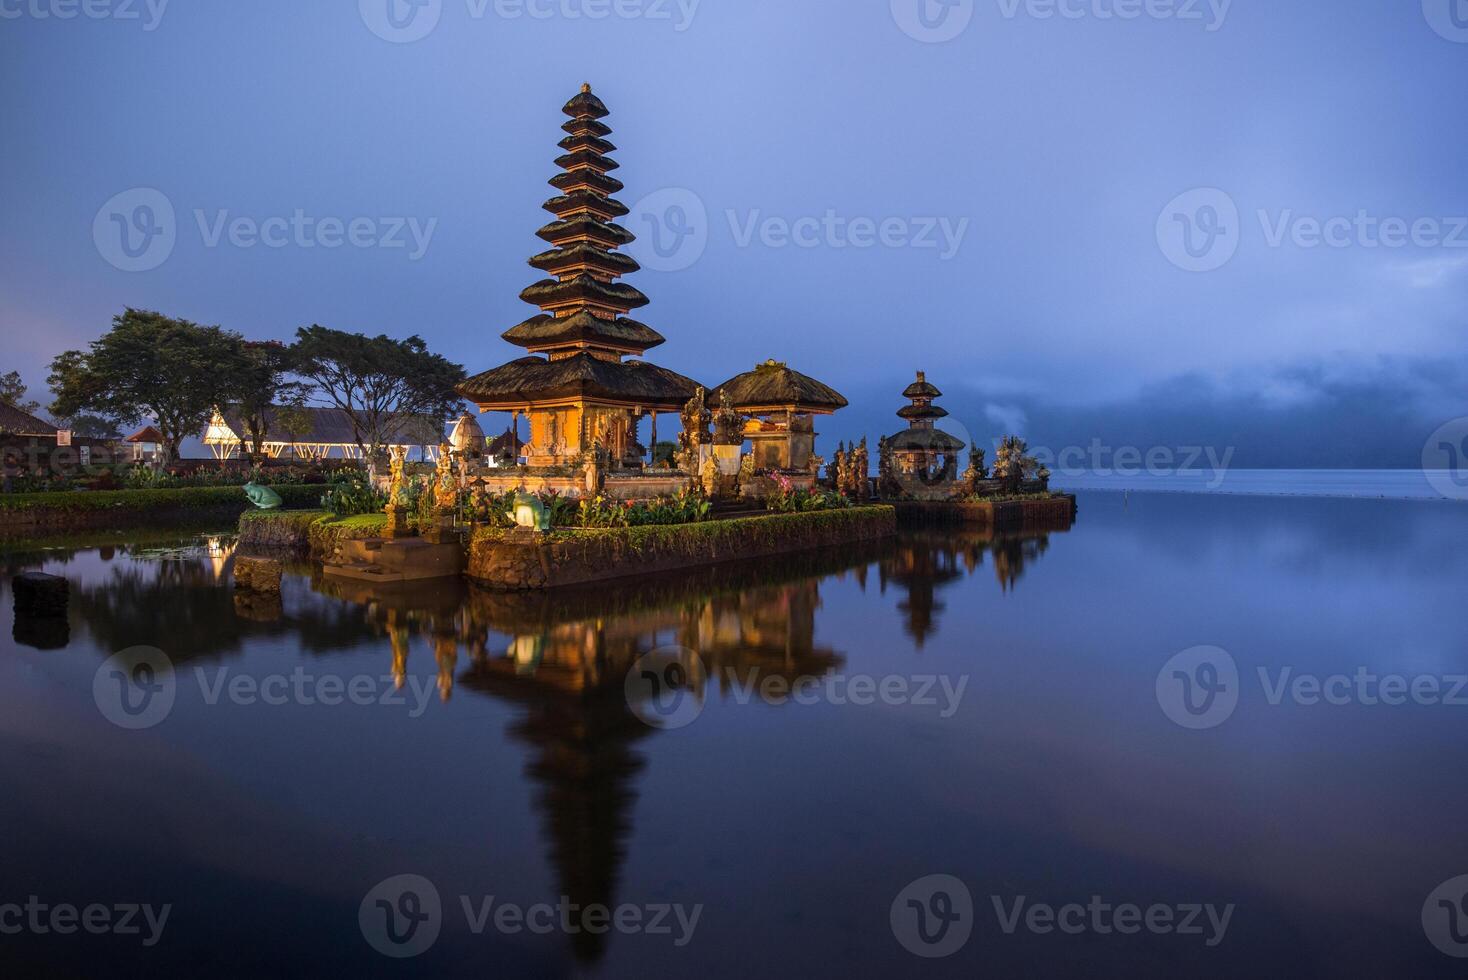 nacht visie van pura ulan danu Bratan een beroemd pittoreske mijlpaal en een significant tempel Aan de kusten van meer Bratan in Bali, Indonesië. foto